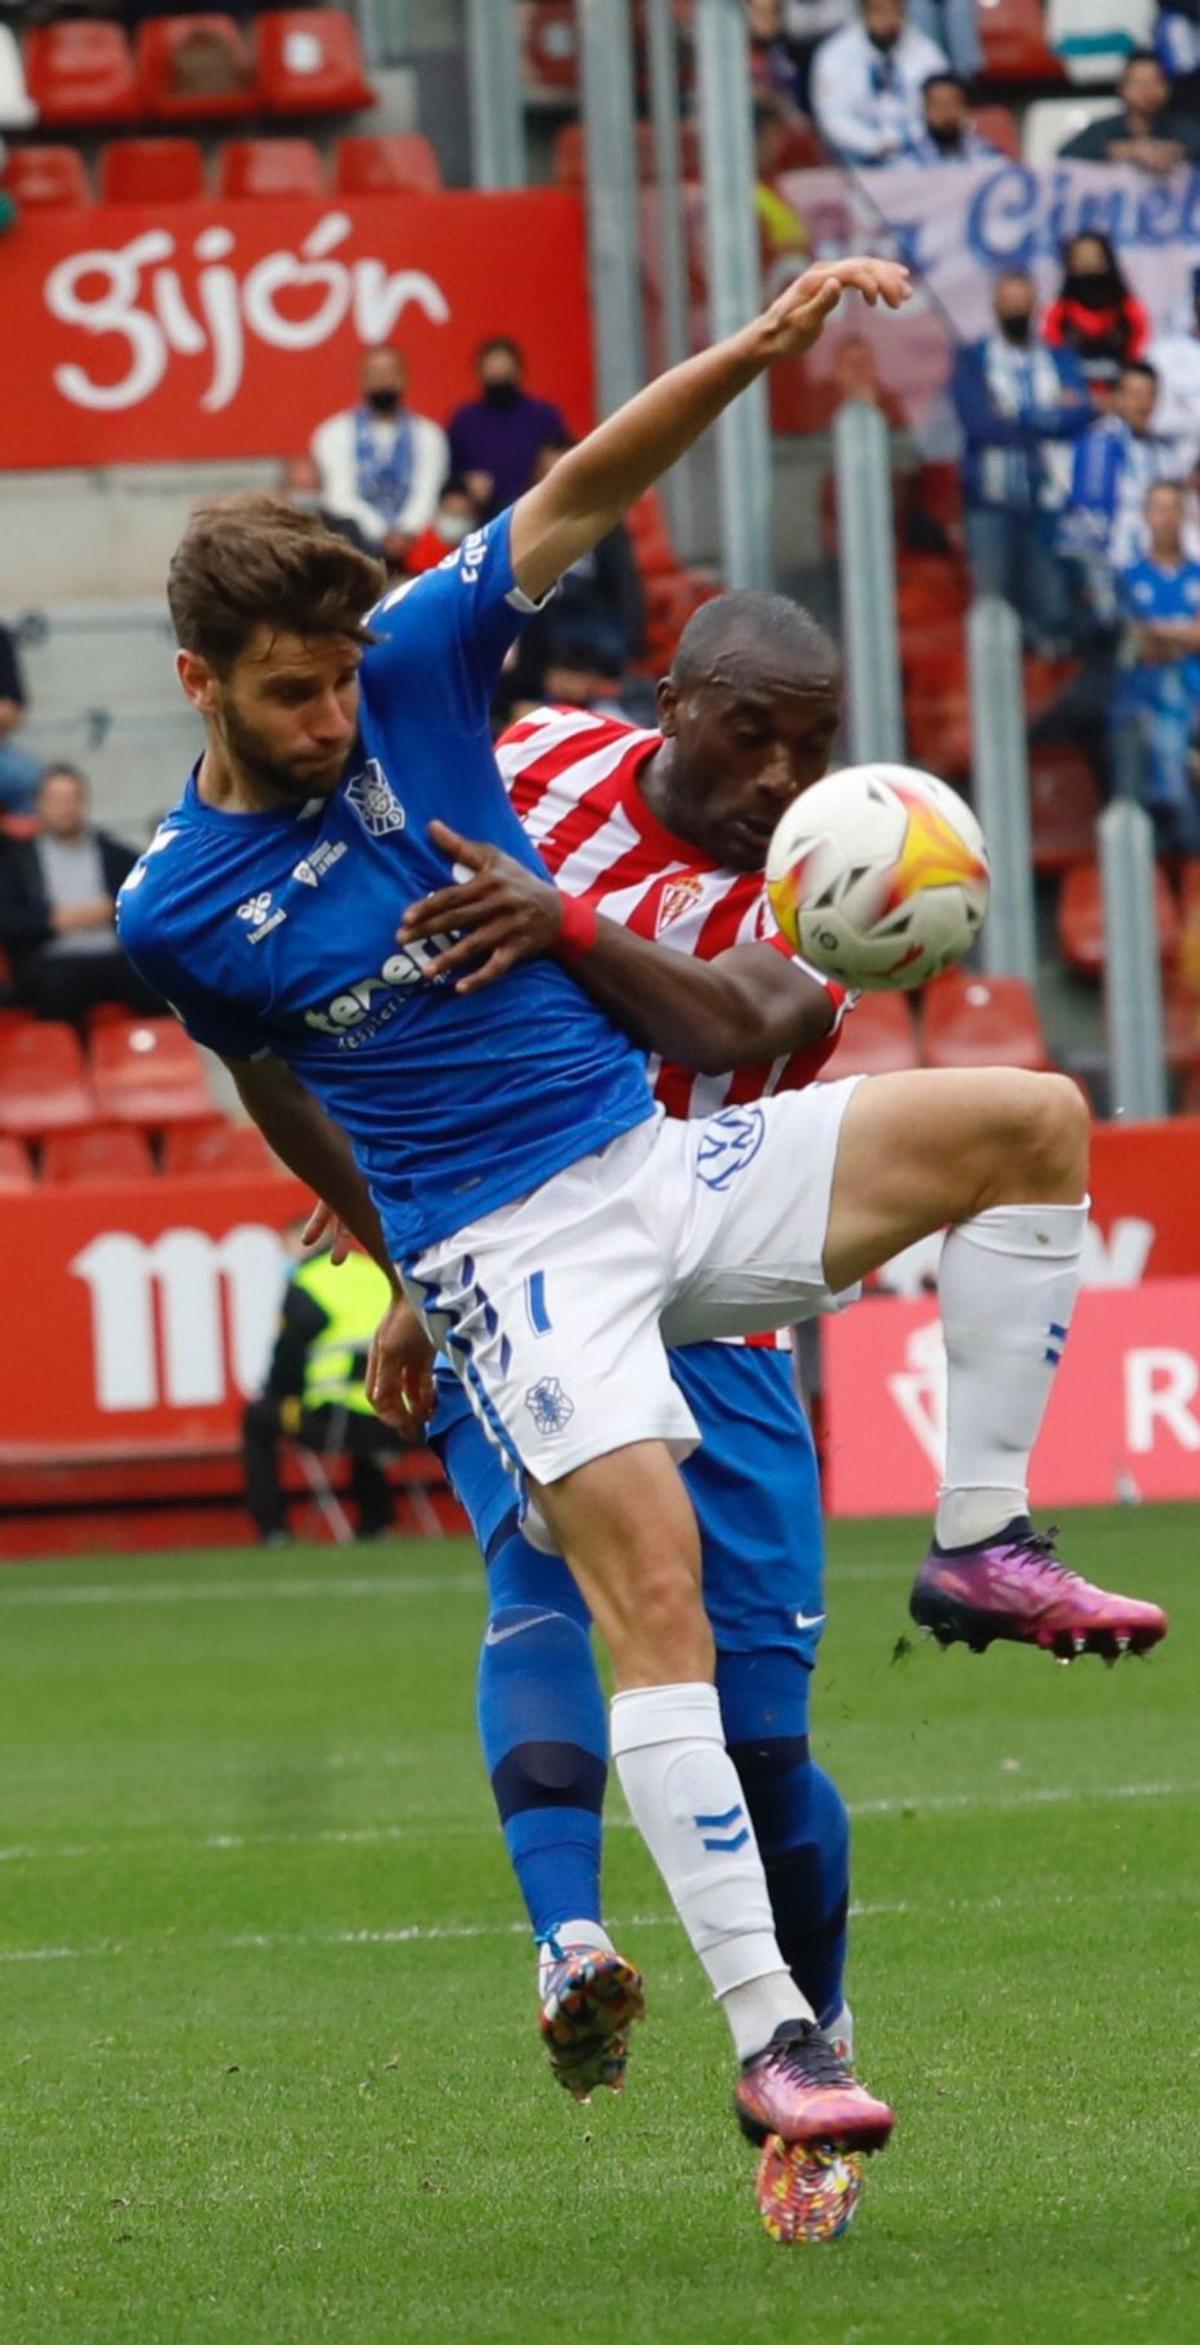 González, peleando por un balón con Babin durante un partido con el Tenerife en El Molinón. | Ángel González